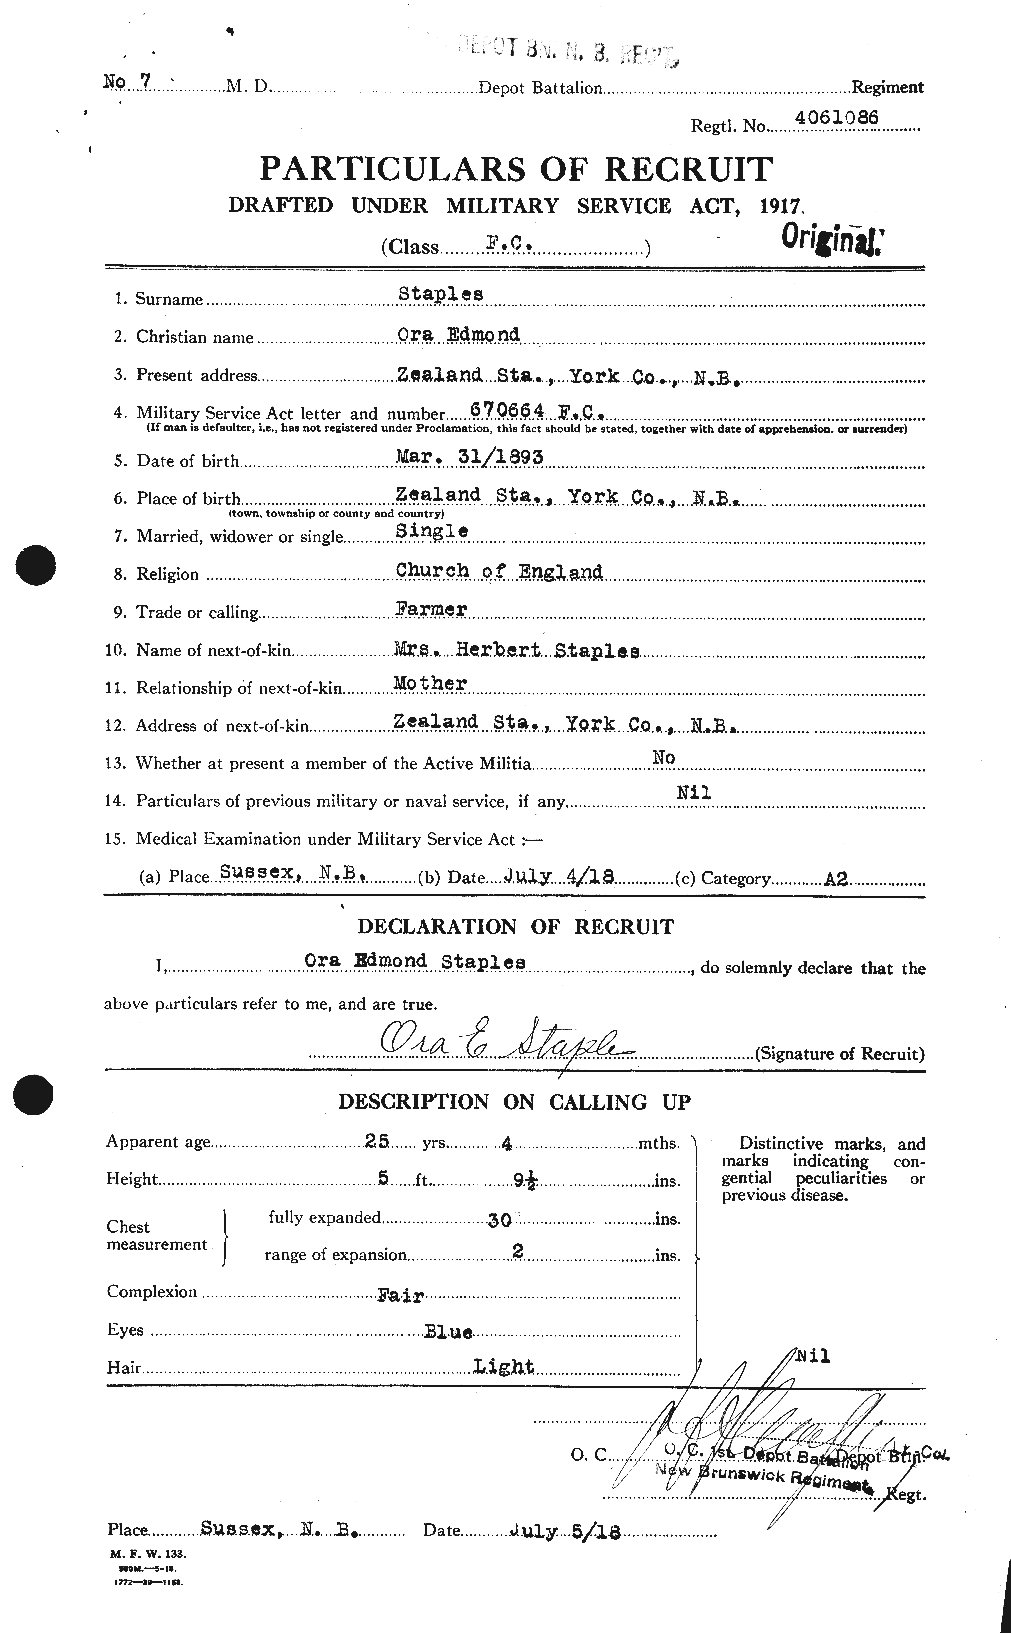 Dossiers du Personnel de la Première Guerre mondiale - CEC 114141a